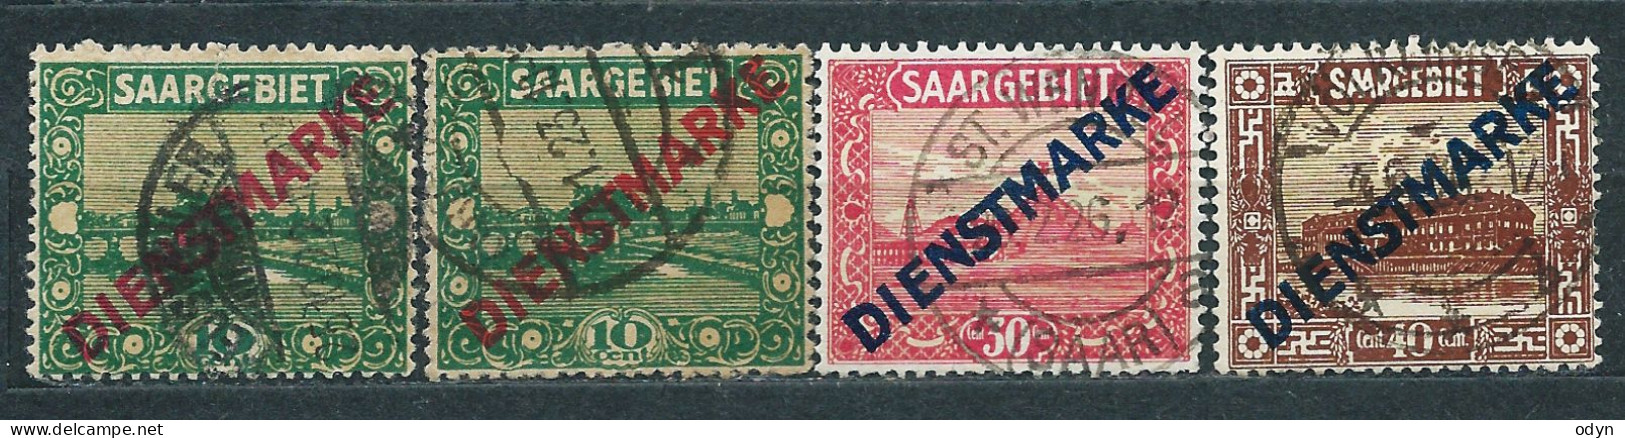 Saargebiet Dienstmarken 1922, Complete Set MiNr 1-11 - Unused MH * + 4 Stamps Used - Service